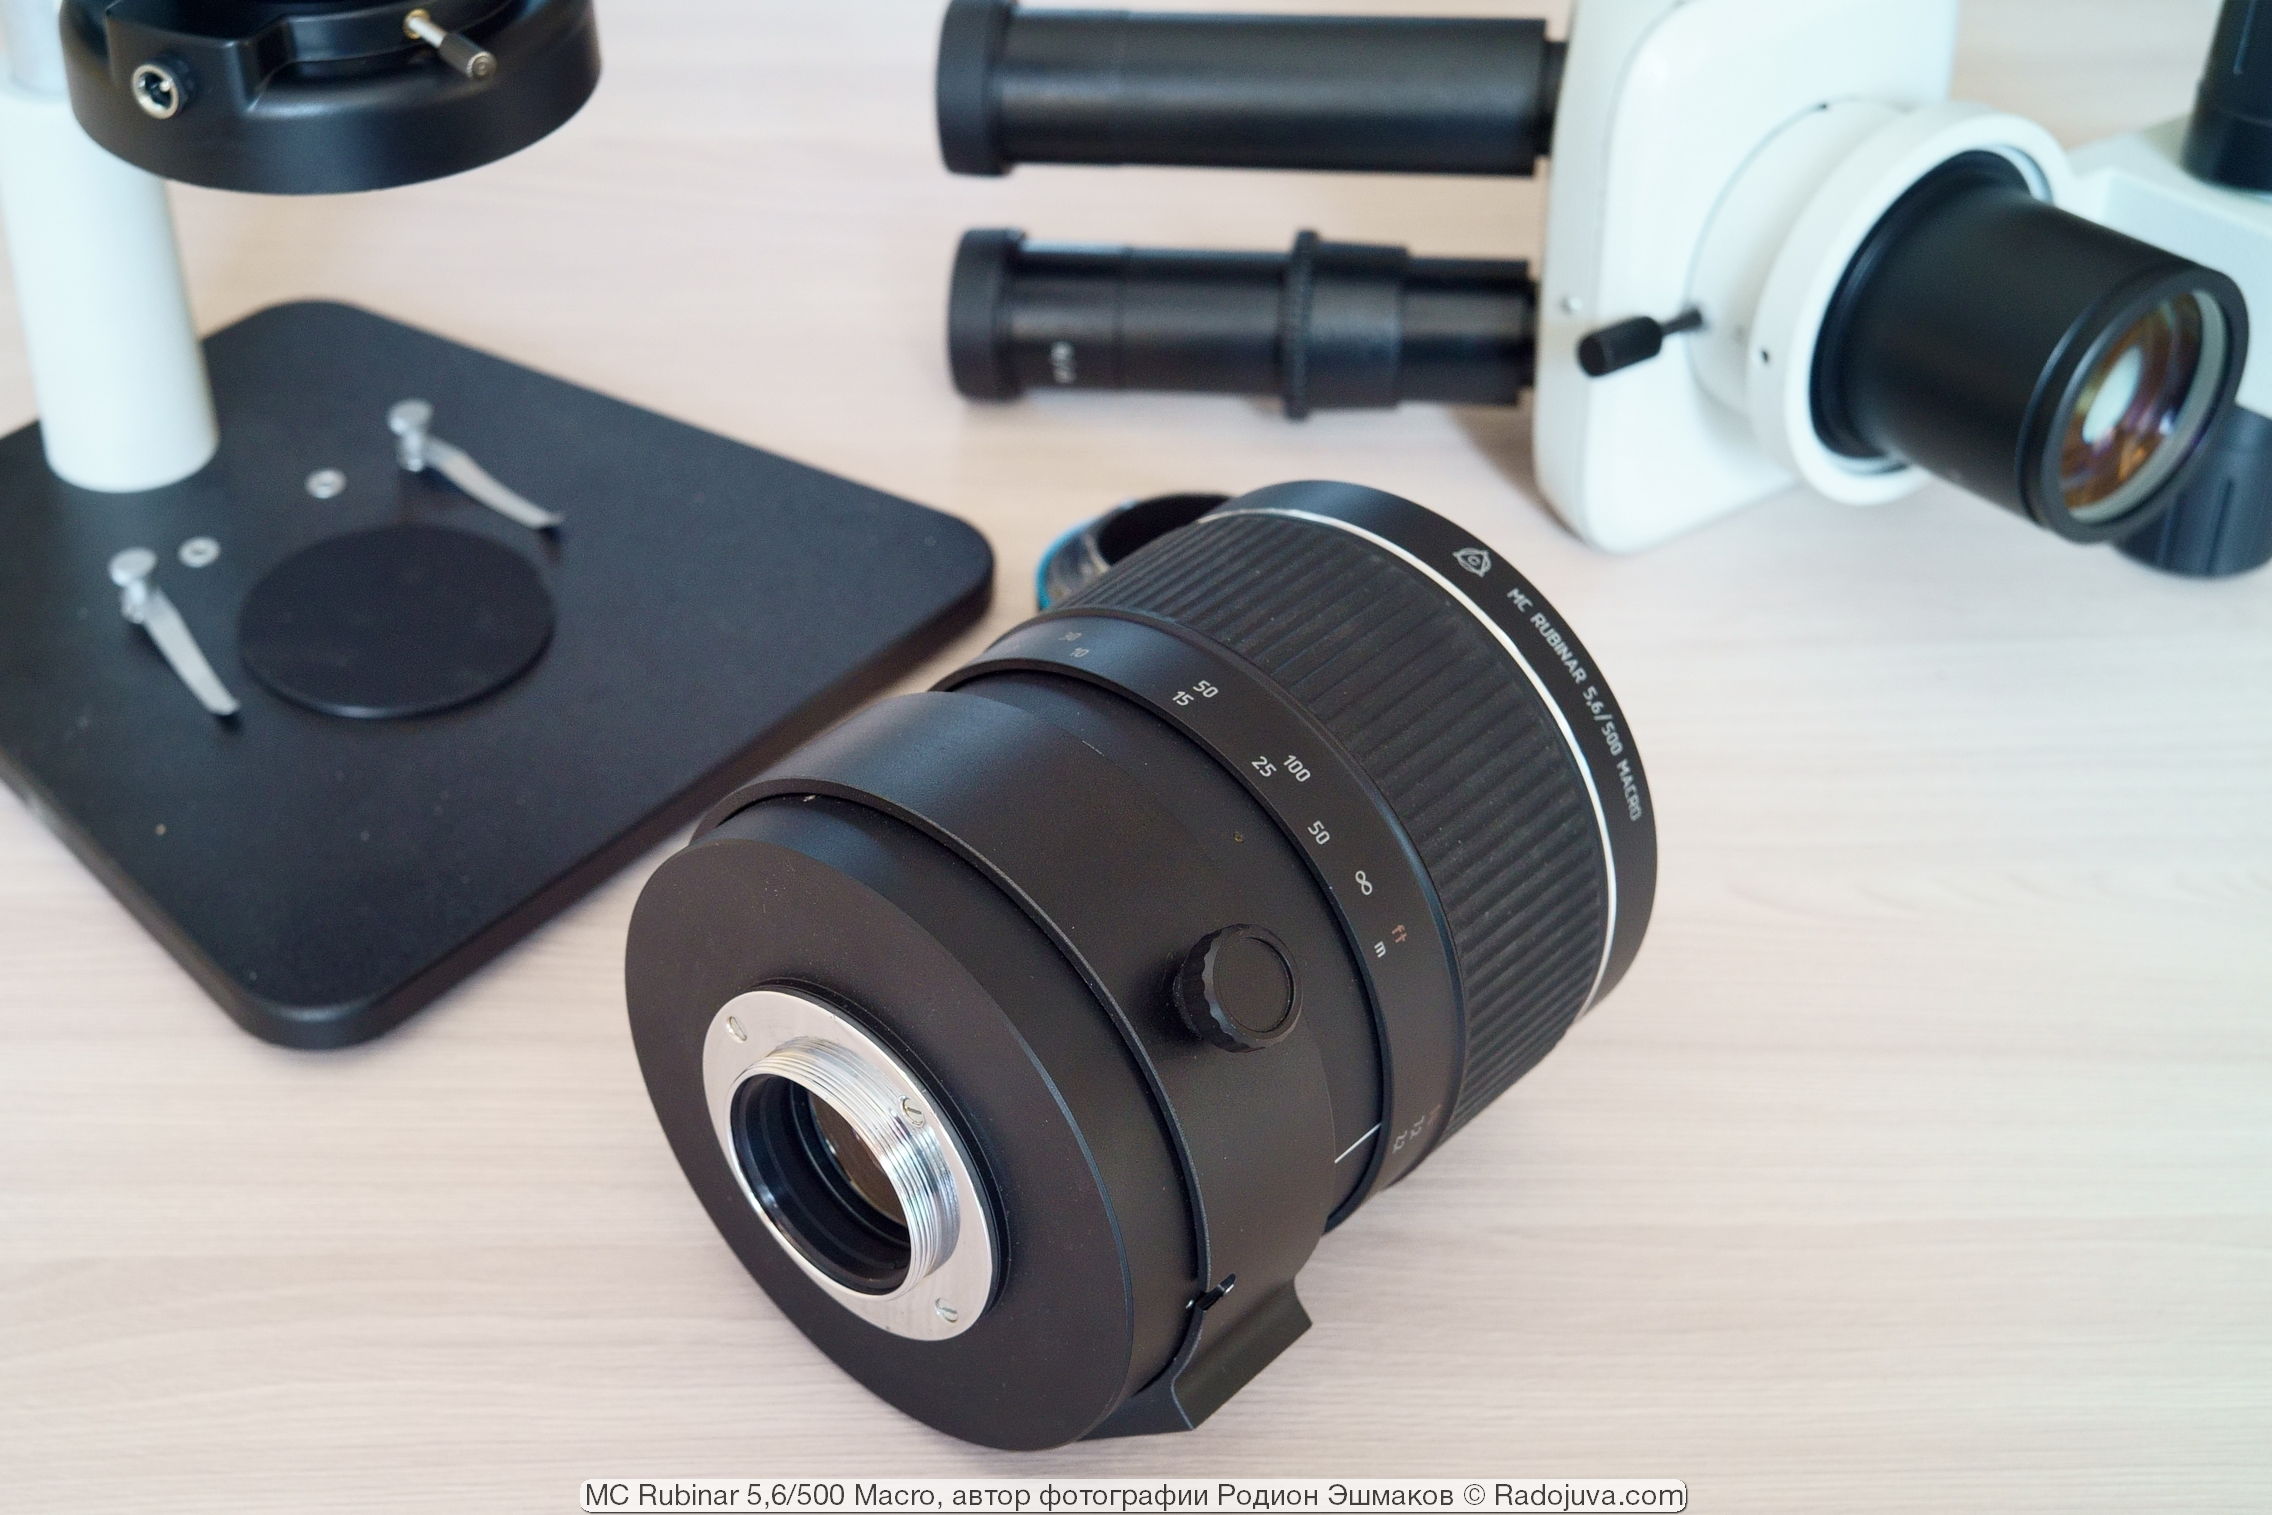 De M42-vatting is universeel, maar spiegelreflexcamera's met een flits "bek" zijn geometrisch onverenigbaar met deze lens.